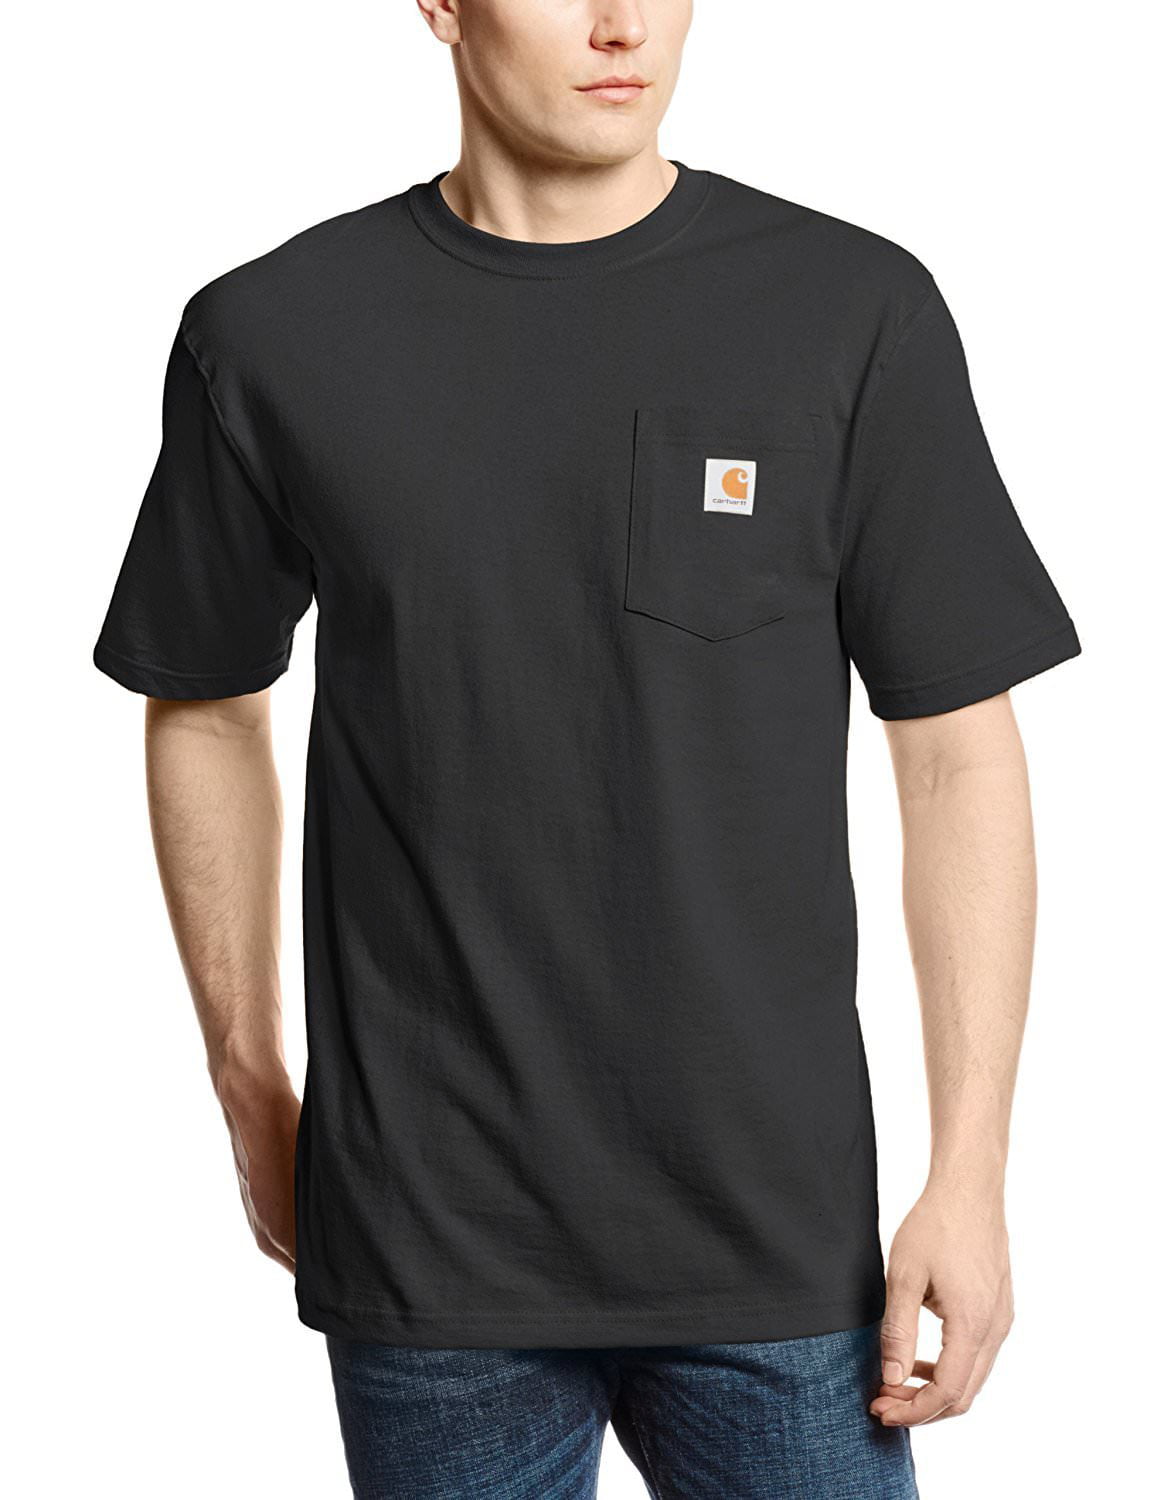 Carhartt - Carhartt Men's Workwear Pocket SS T Shirt - Walmart.com ...